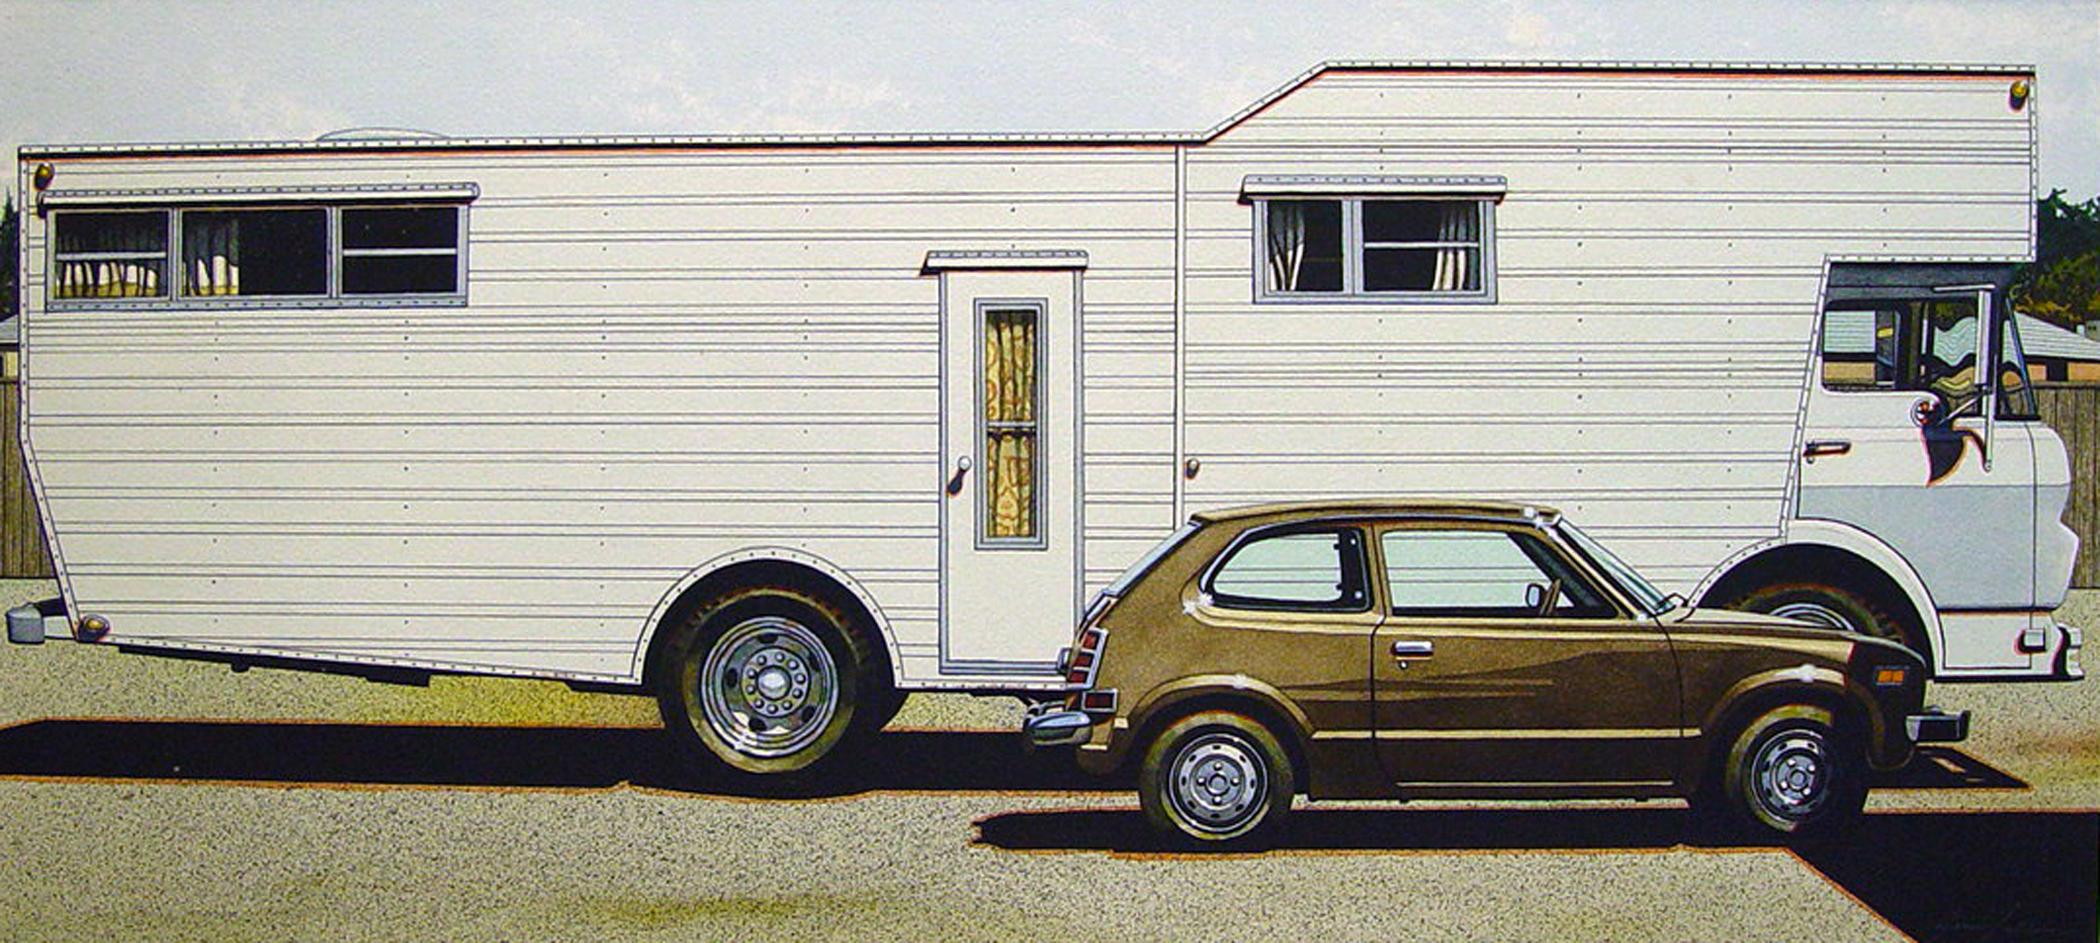 Mobile Home with Honda - aquarelle originale, 1974 - Réalisme américain Art par James Torlakson